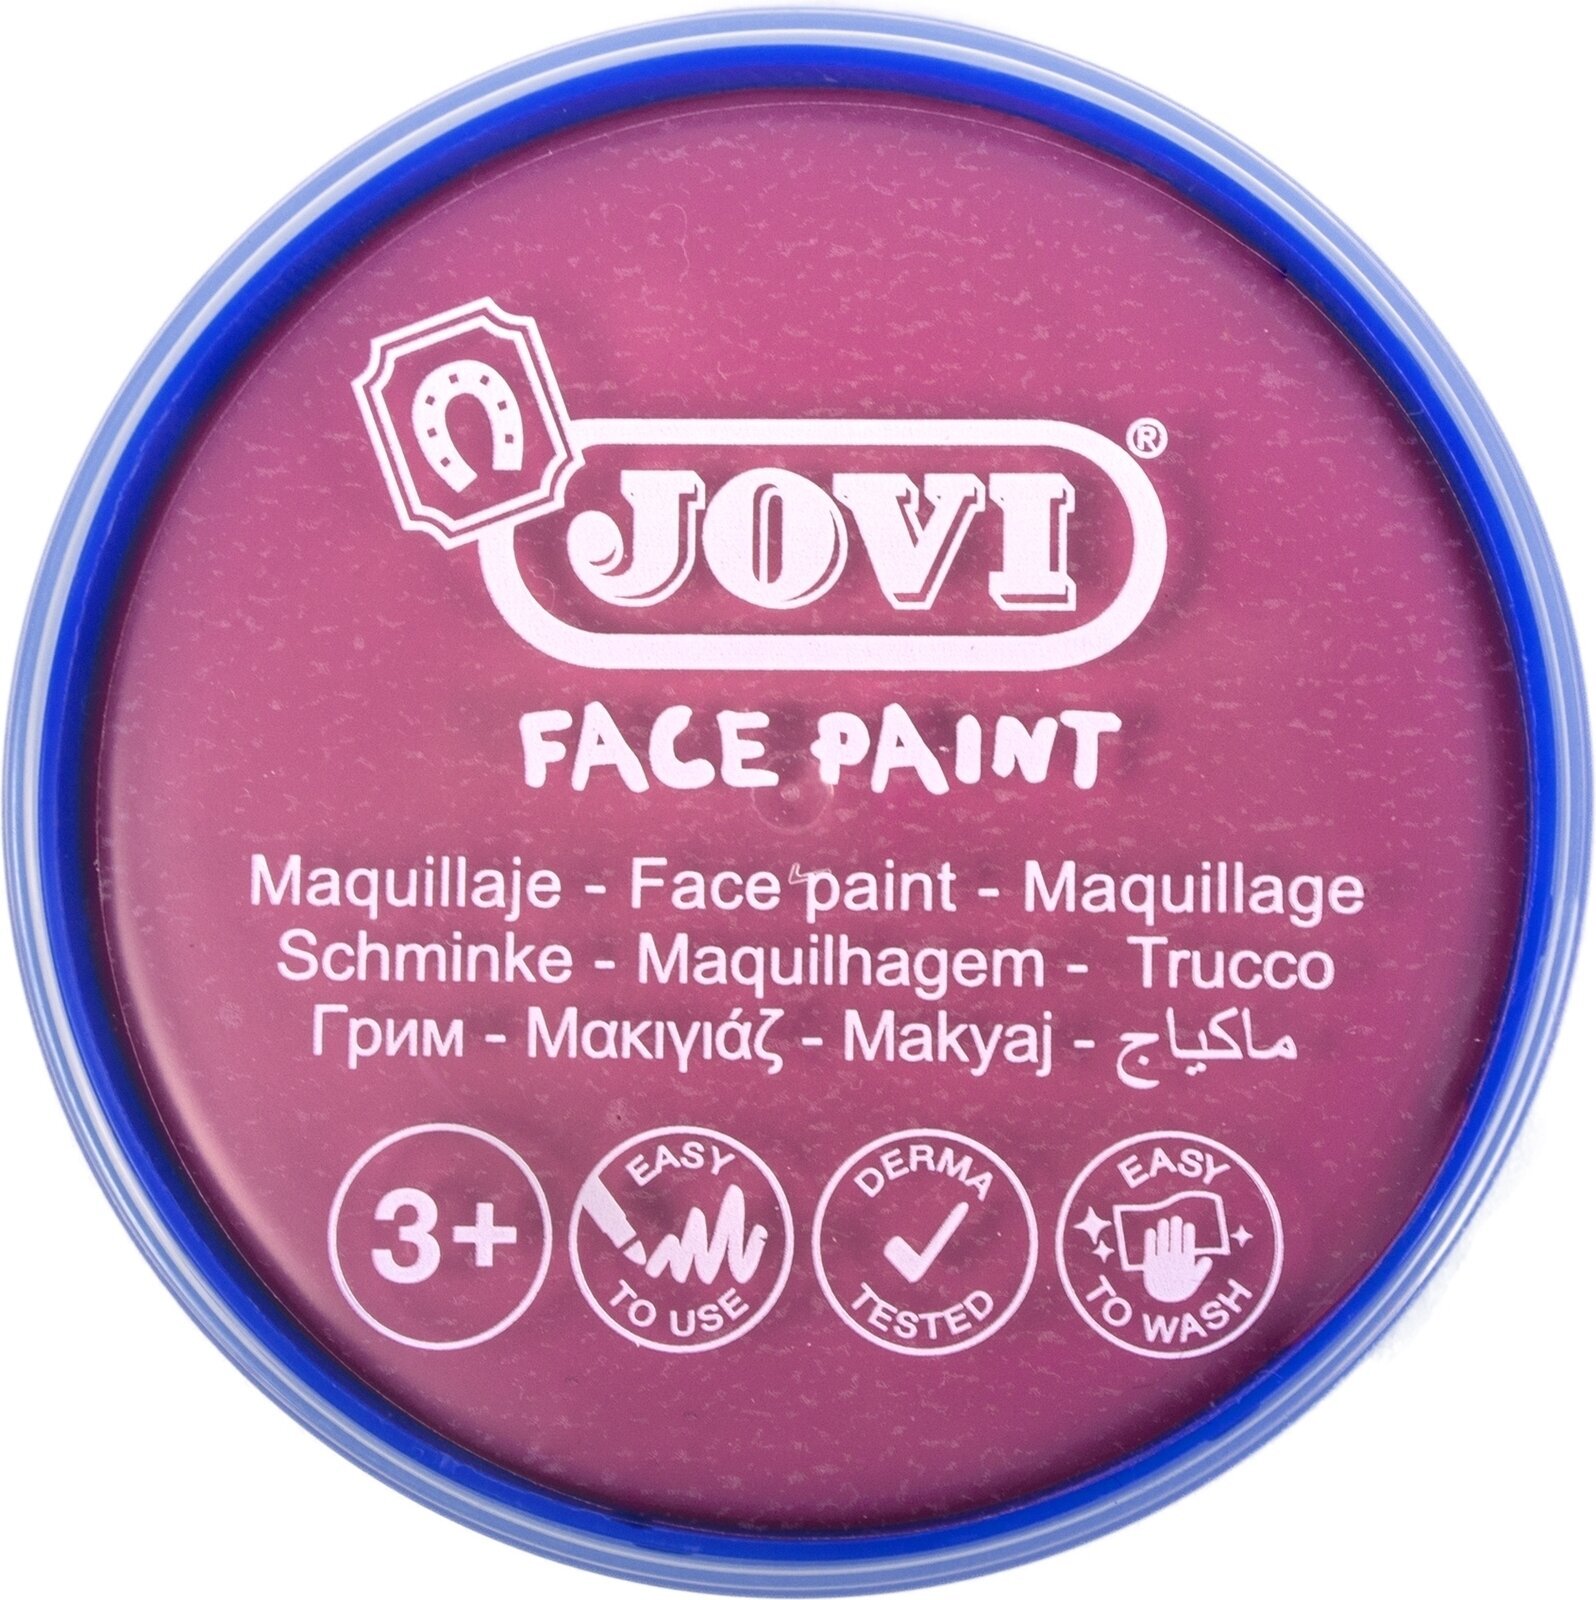 Face Paint Jovi 17107 Face Paint Pink 8 ml 1 pc